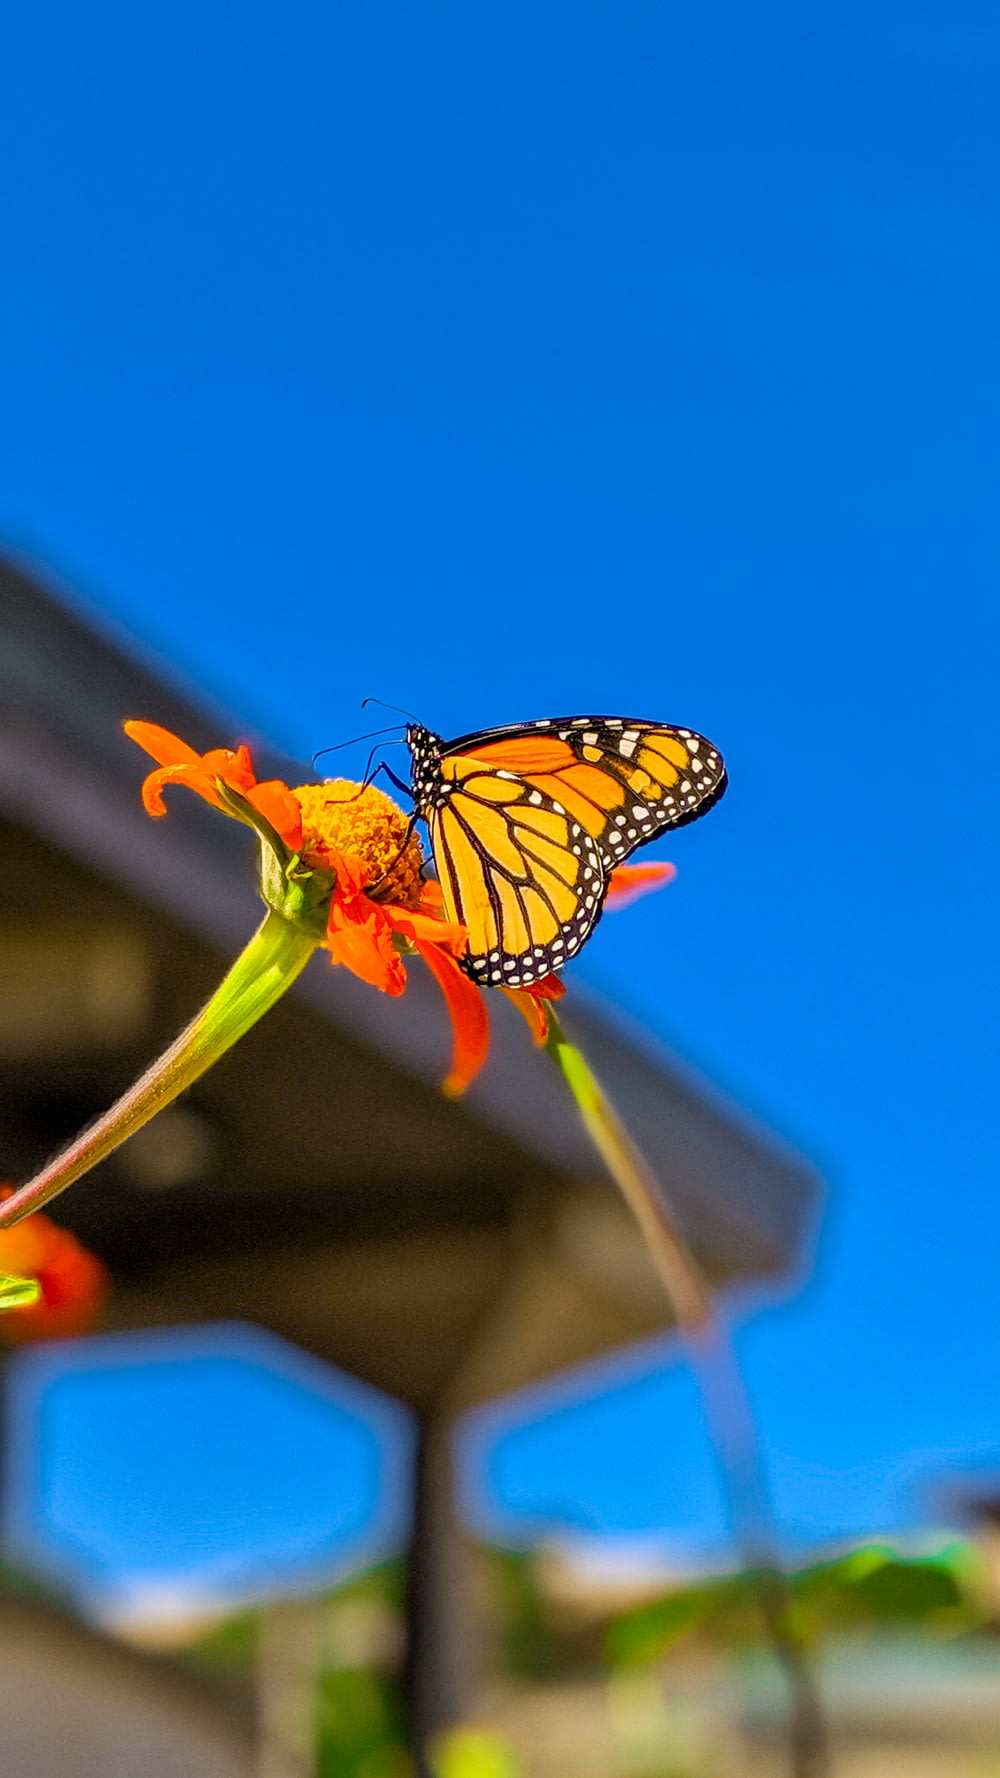 オオカバマダラはオレンジ色の花にとまって、昼間のクローズアップ写真で